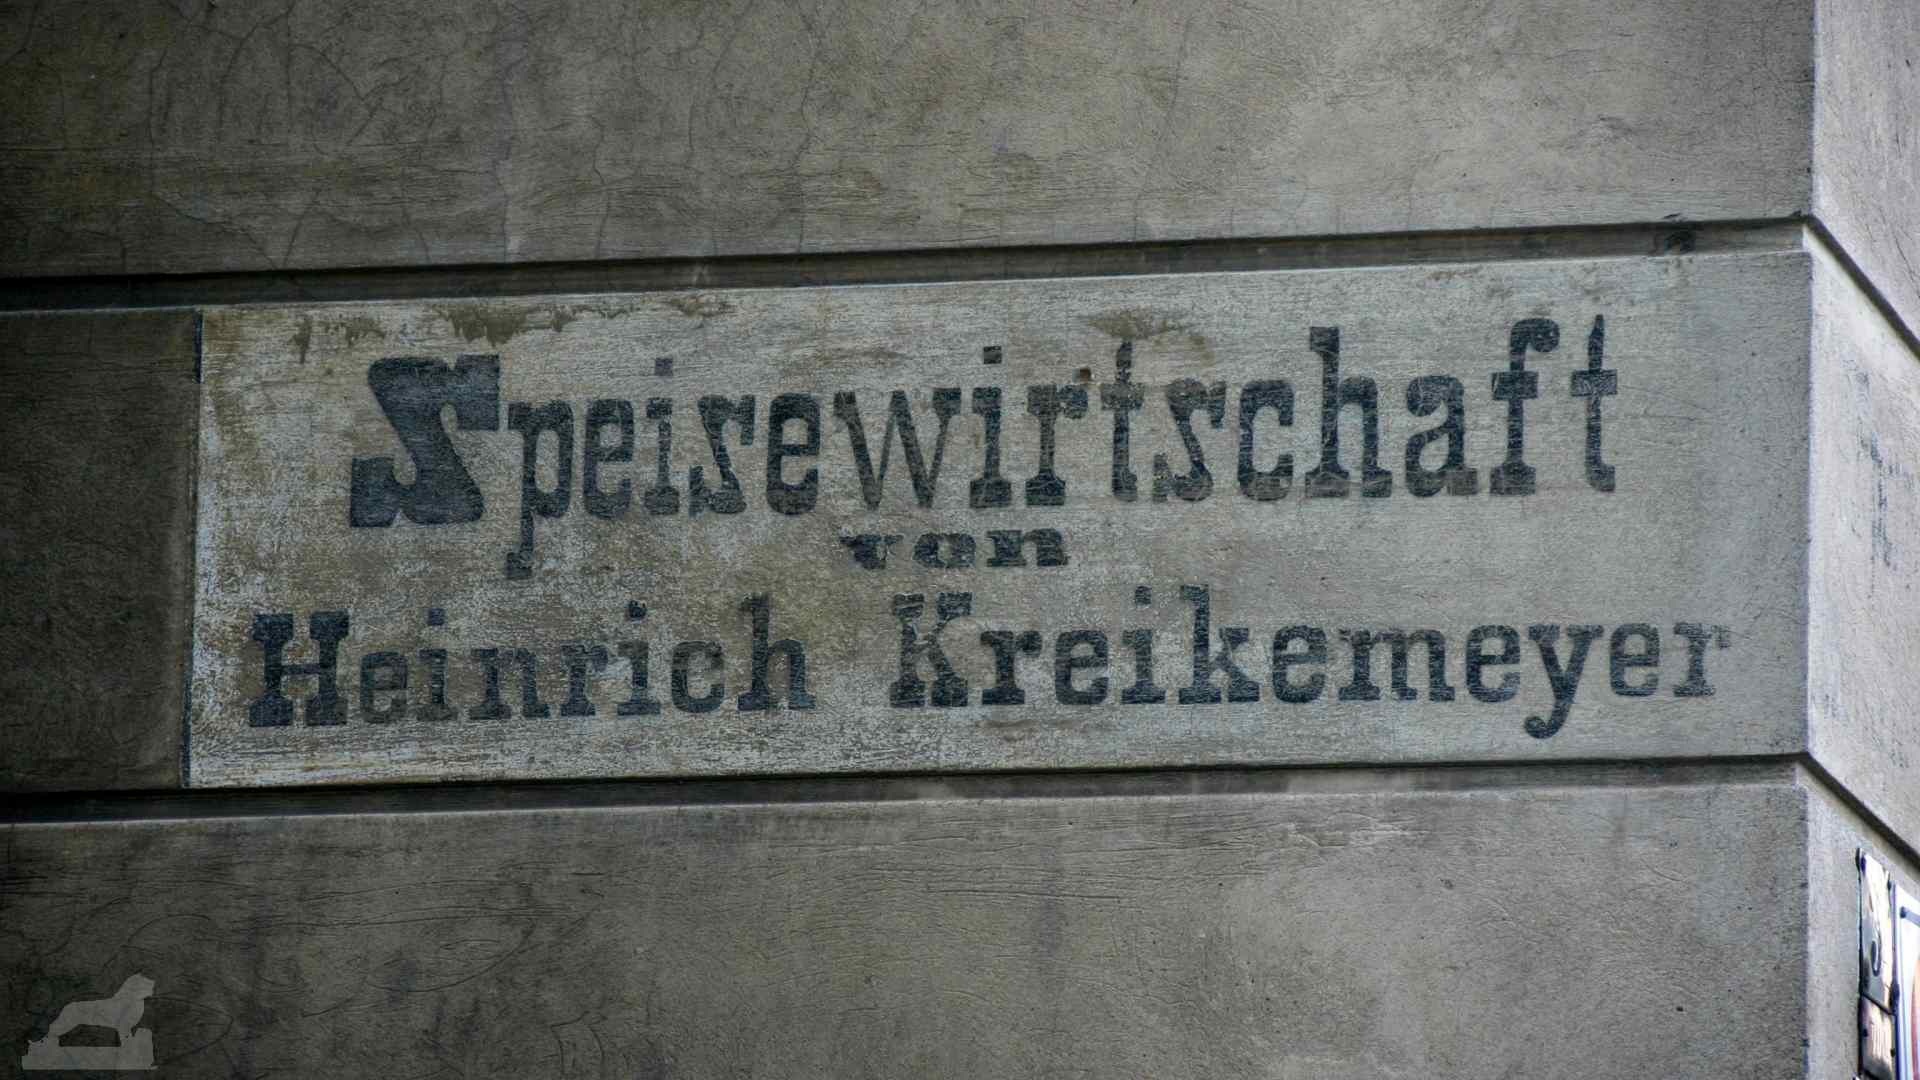 ehemalige Speisewirtschaft von Heinrich Kreikemeyer in der Ludwigstraße